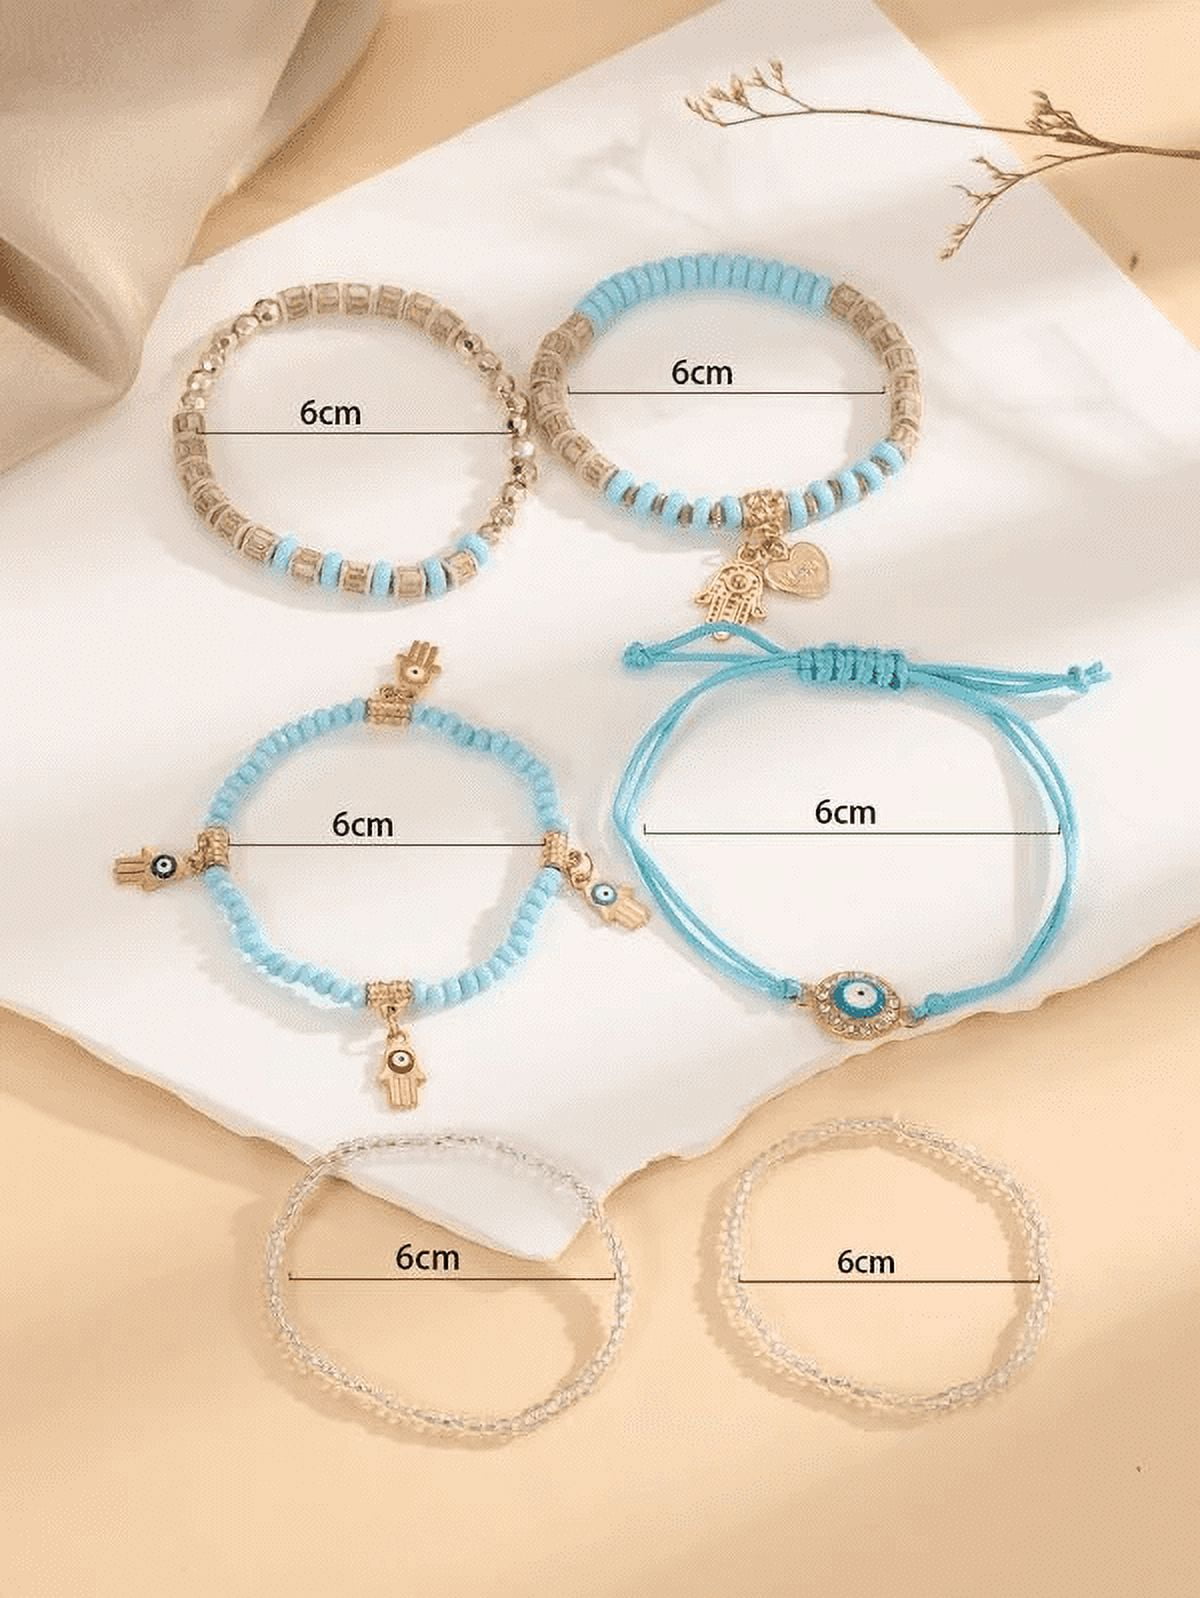 SEARIPE 3 Pcs Beaded Bracelets Set Tree Charm Jewelry Boho Multilayer  Stackable Bracelets for Women Girls Coffee